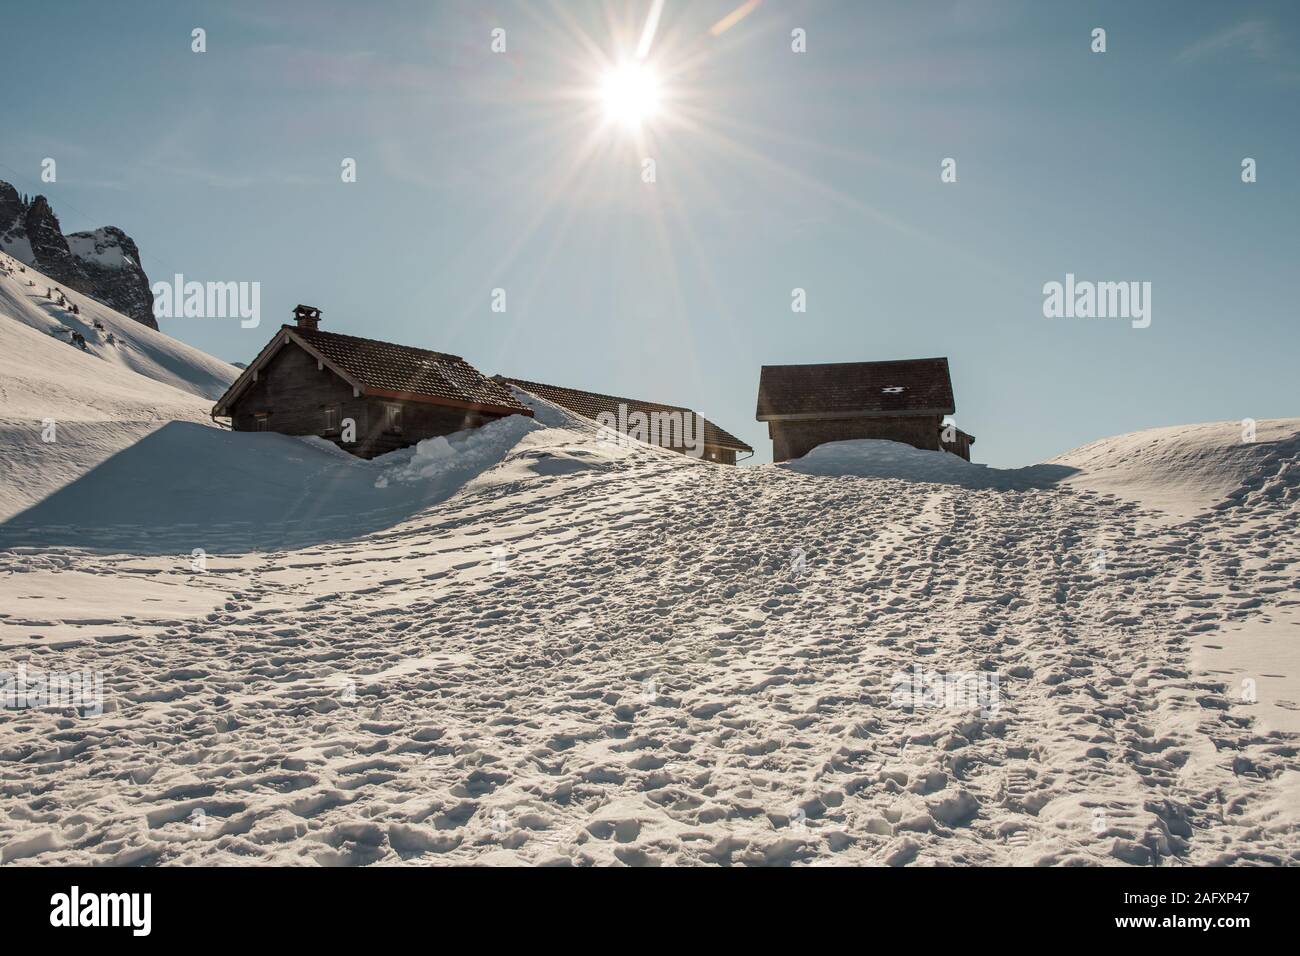 Winter landscape with wooden huts, Schwaegalp, Canton of Appenzell Ausserrhoden, Switzerland Stock Photo